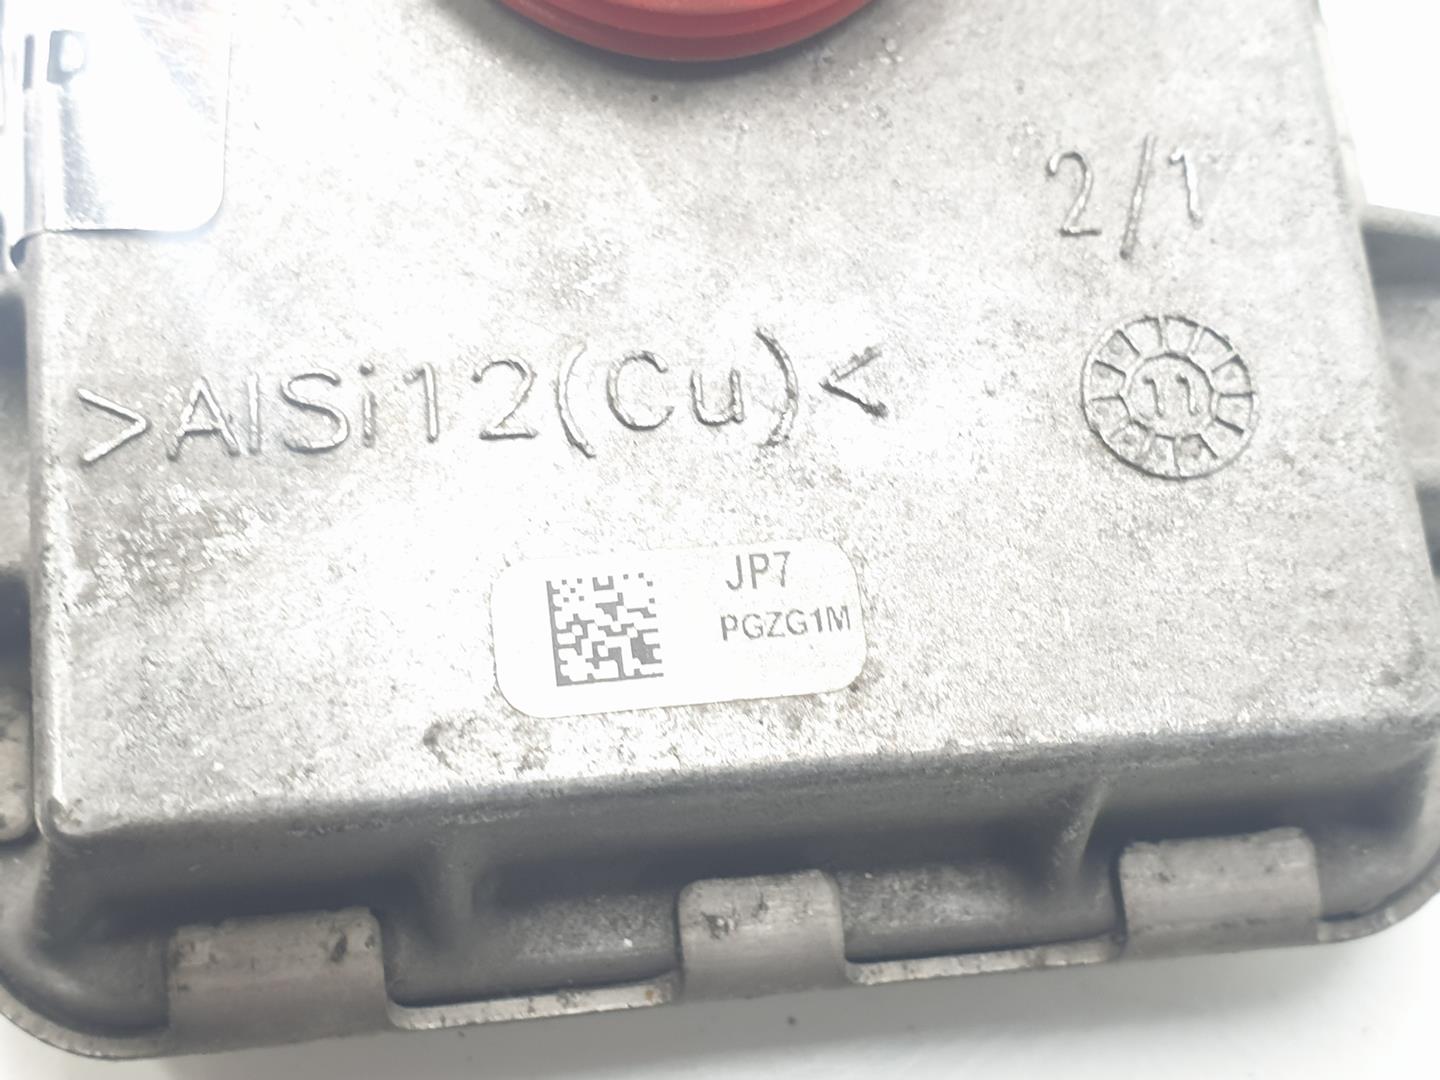 MINI Cooper R56 (2006-2015) Xenon Light Control Unit 7255724, 63117356250 23748788